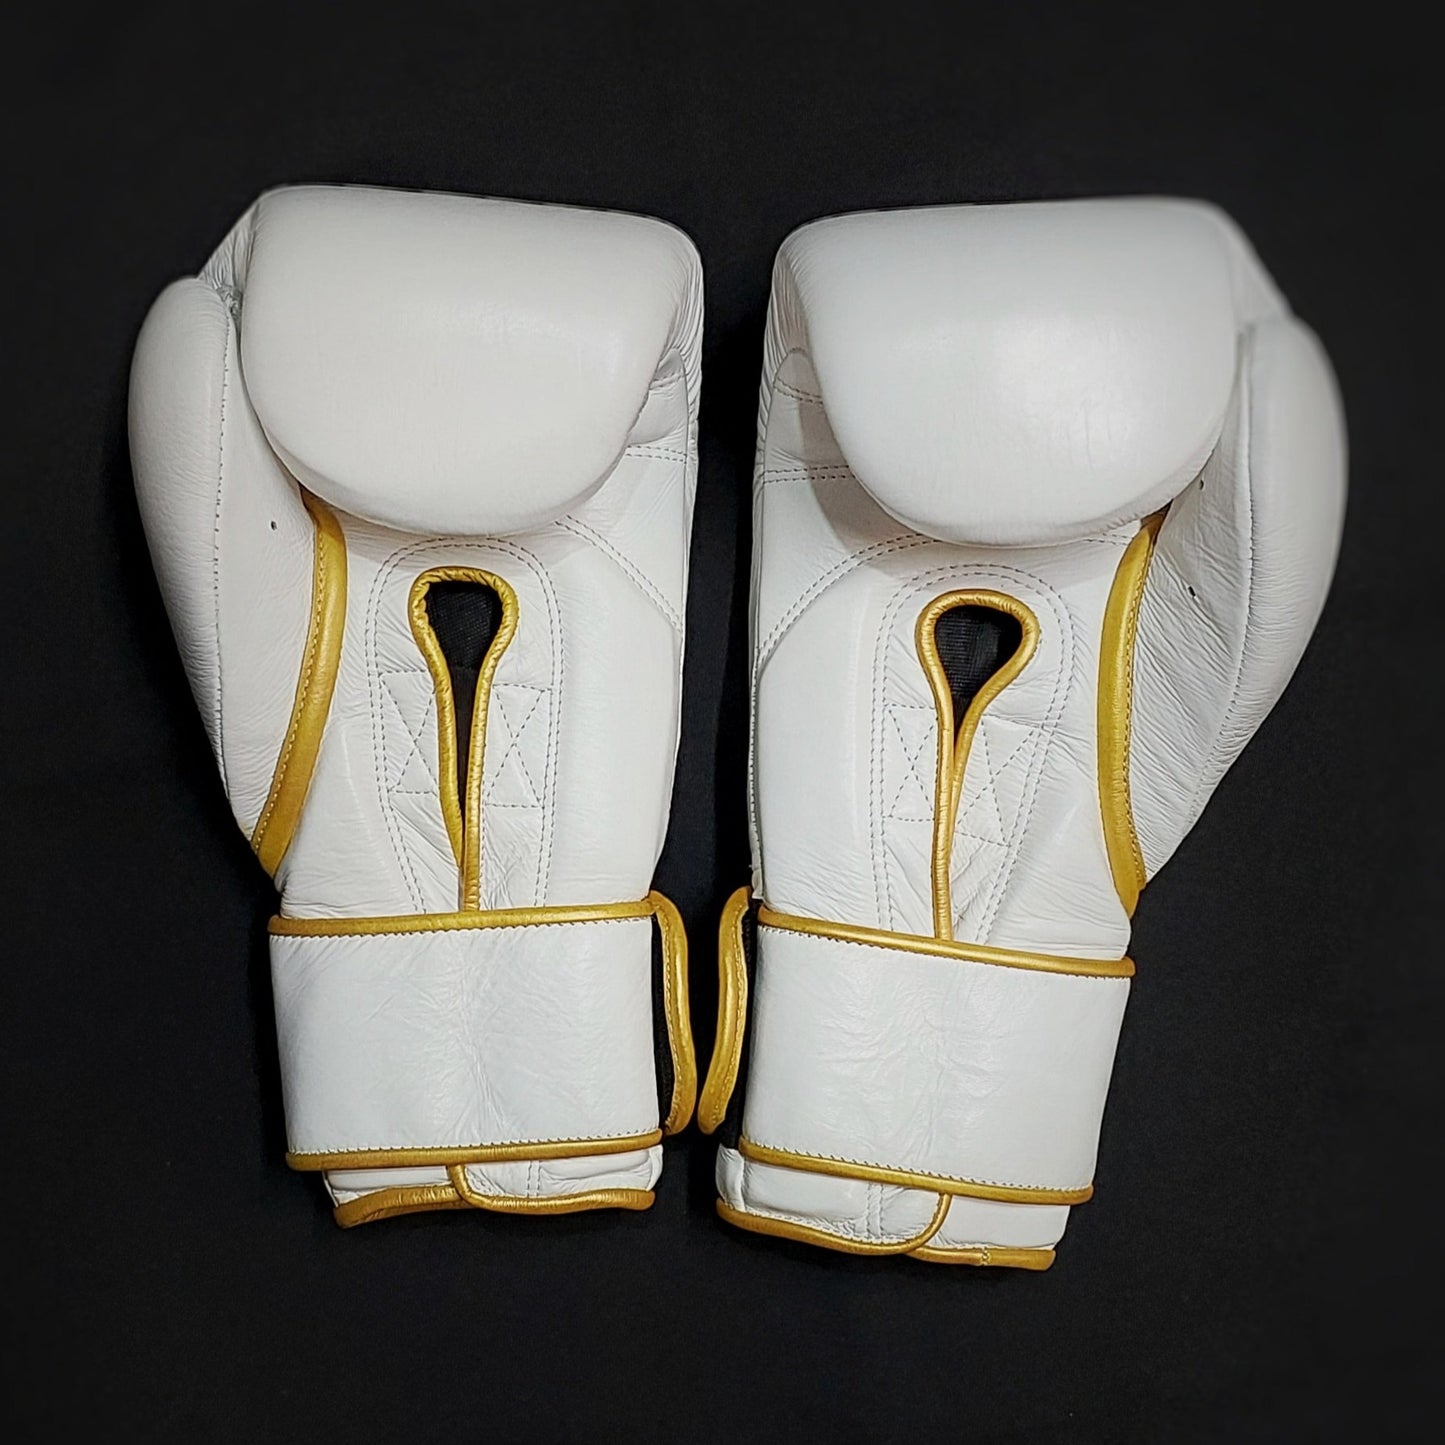 Warfare Boxing Glove